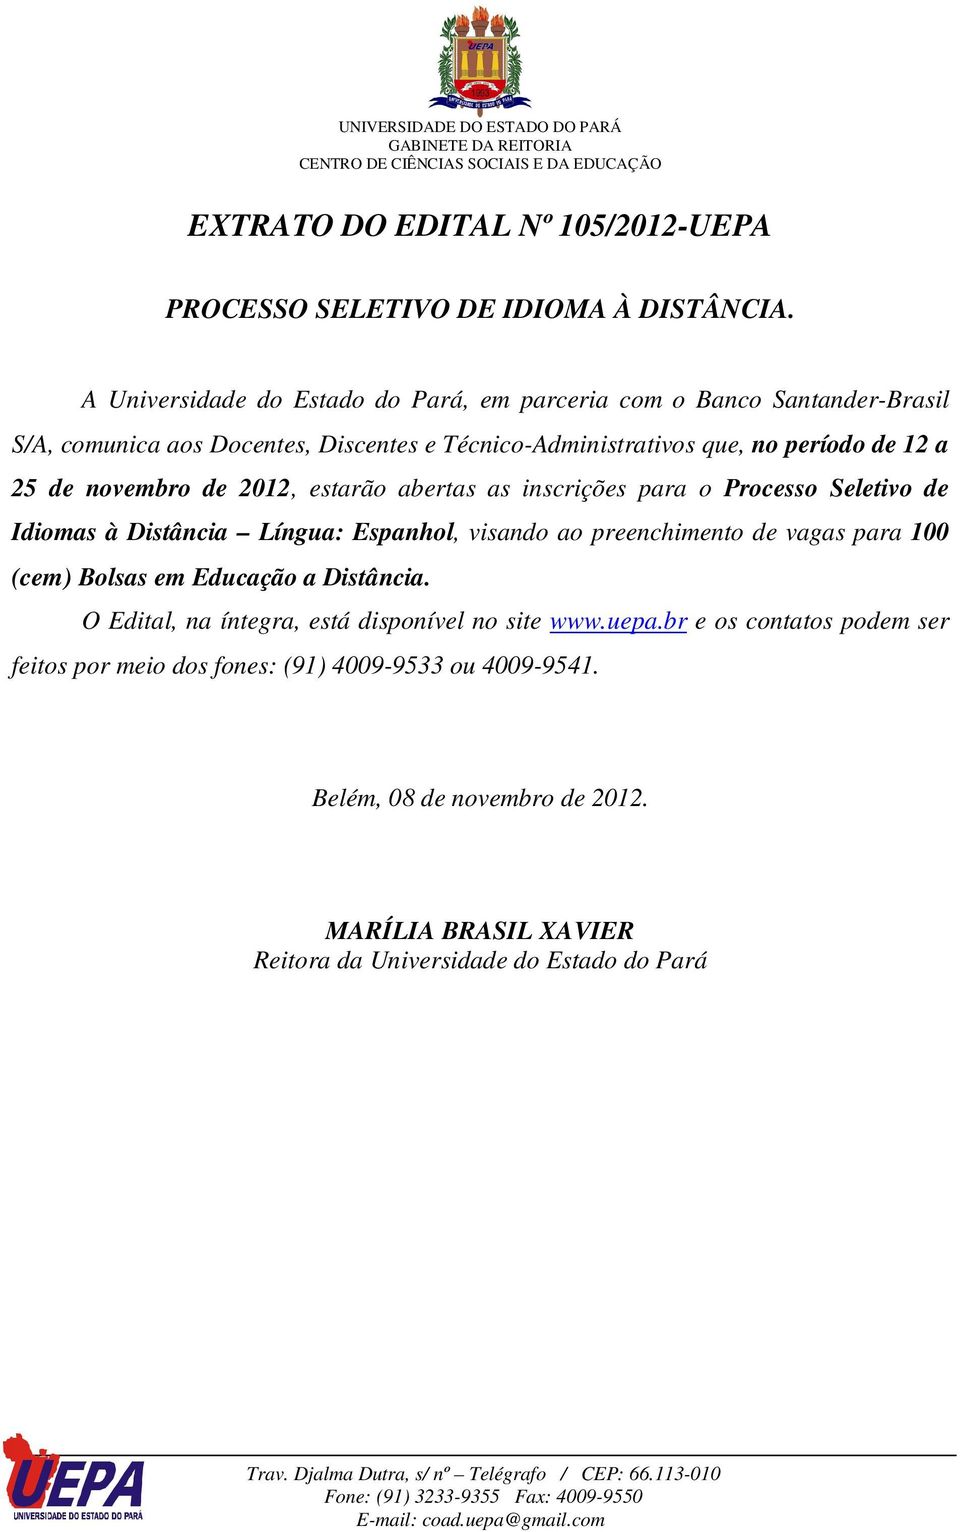 de novembro de 2012, estarão abertas as inscrições para o Processo Seletivo de Idiomas à Distância Língua: Espanhol, visando ao preenchimento de vagas para 100 (cem)